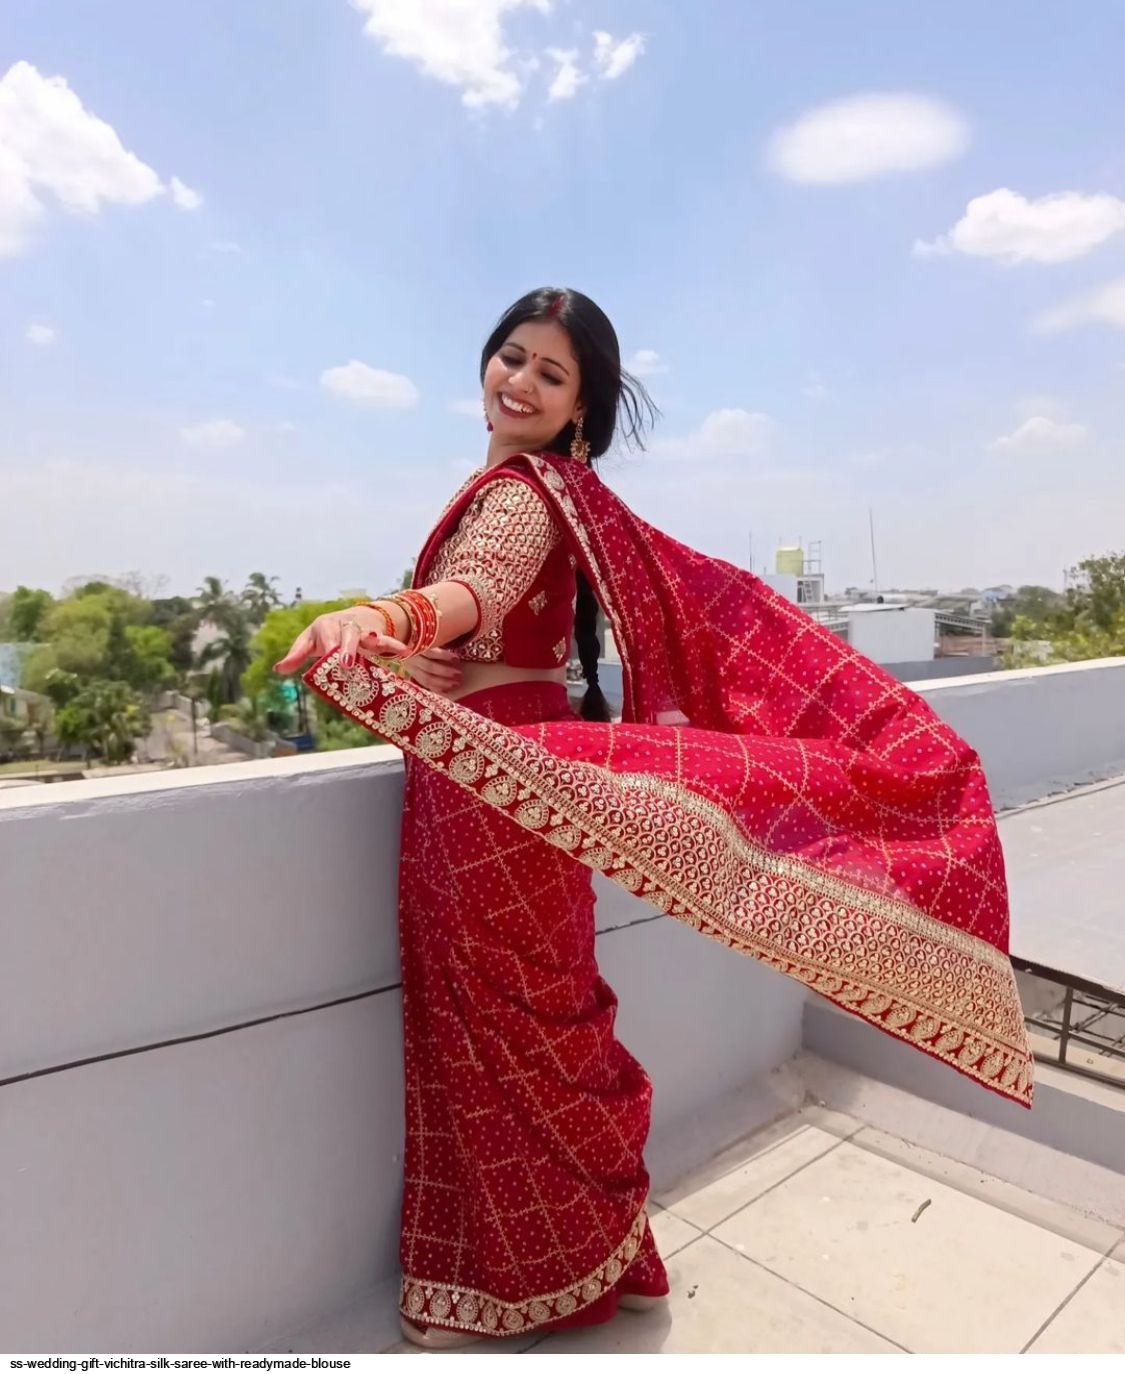 Readymade Saree For Wedding: न चुन्नट की टेंशन न सेटिंग का झंझट, बस 5 मिनट  में हों हर फंक्शन के लिए तैयार | readymade saree for wedding you must have  in your